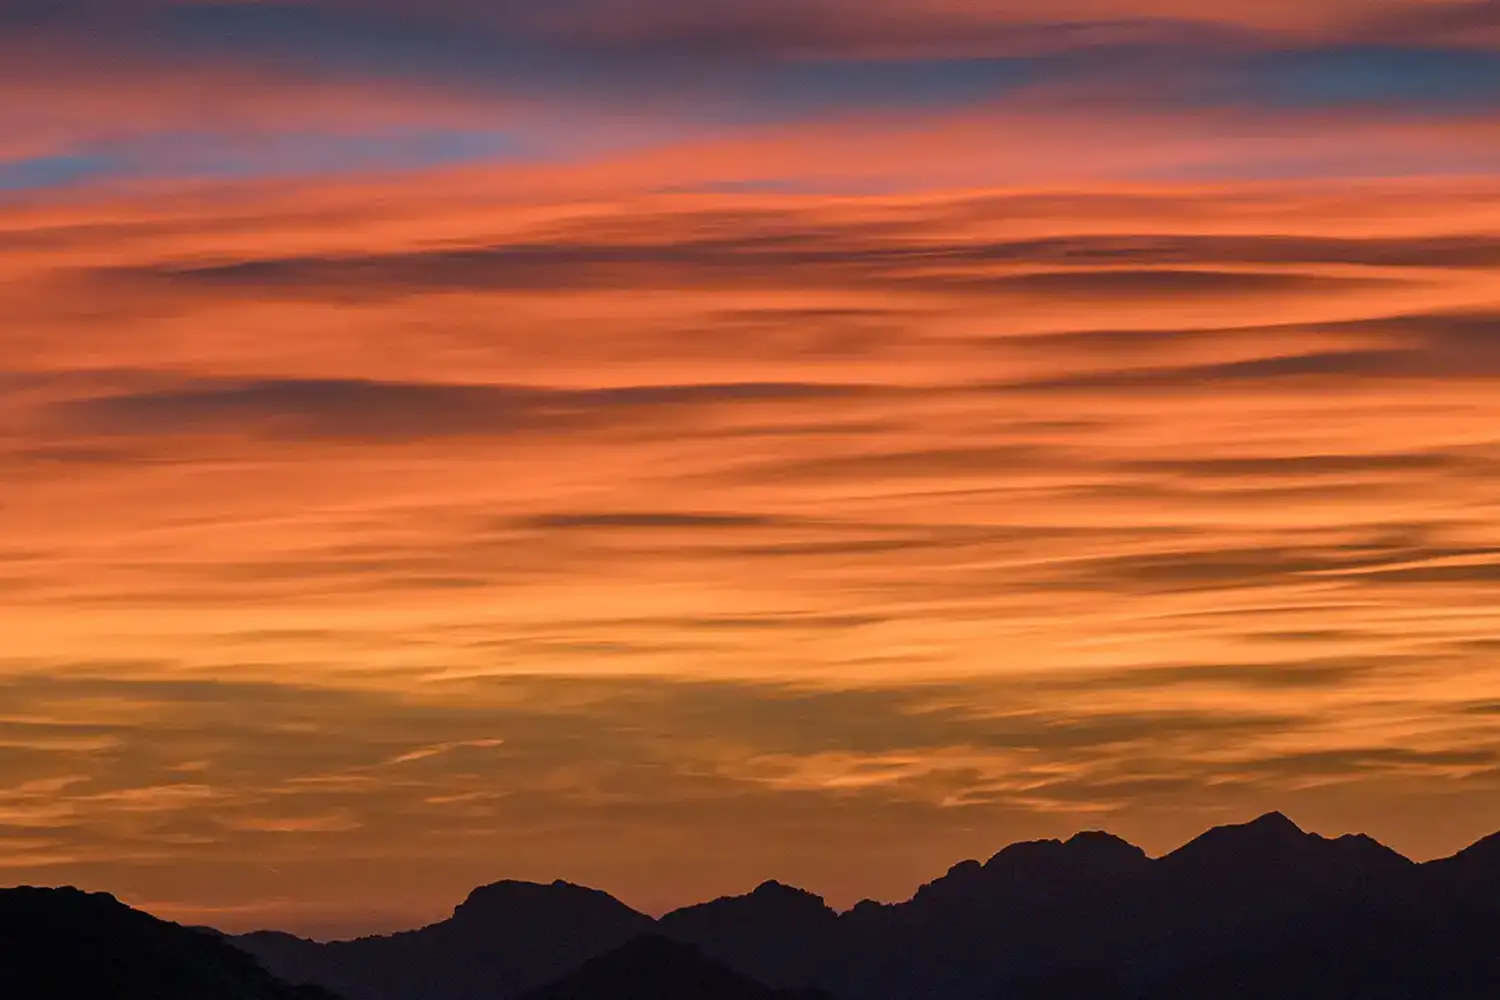 sunset sky with mountain ridgeline